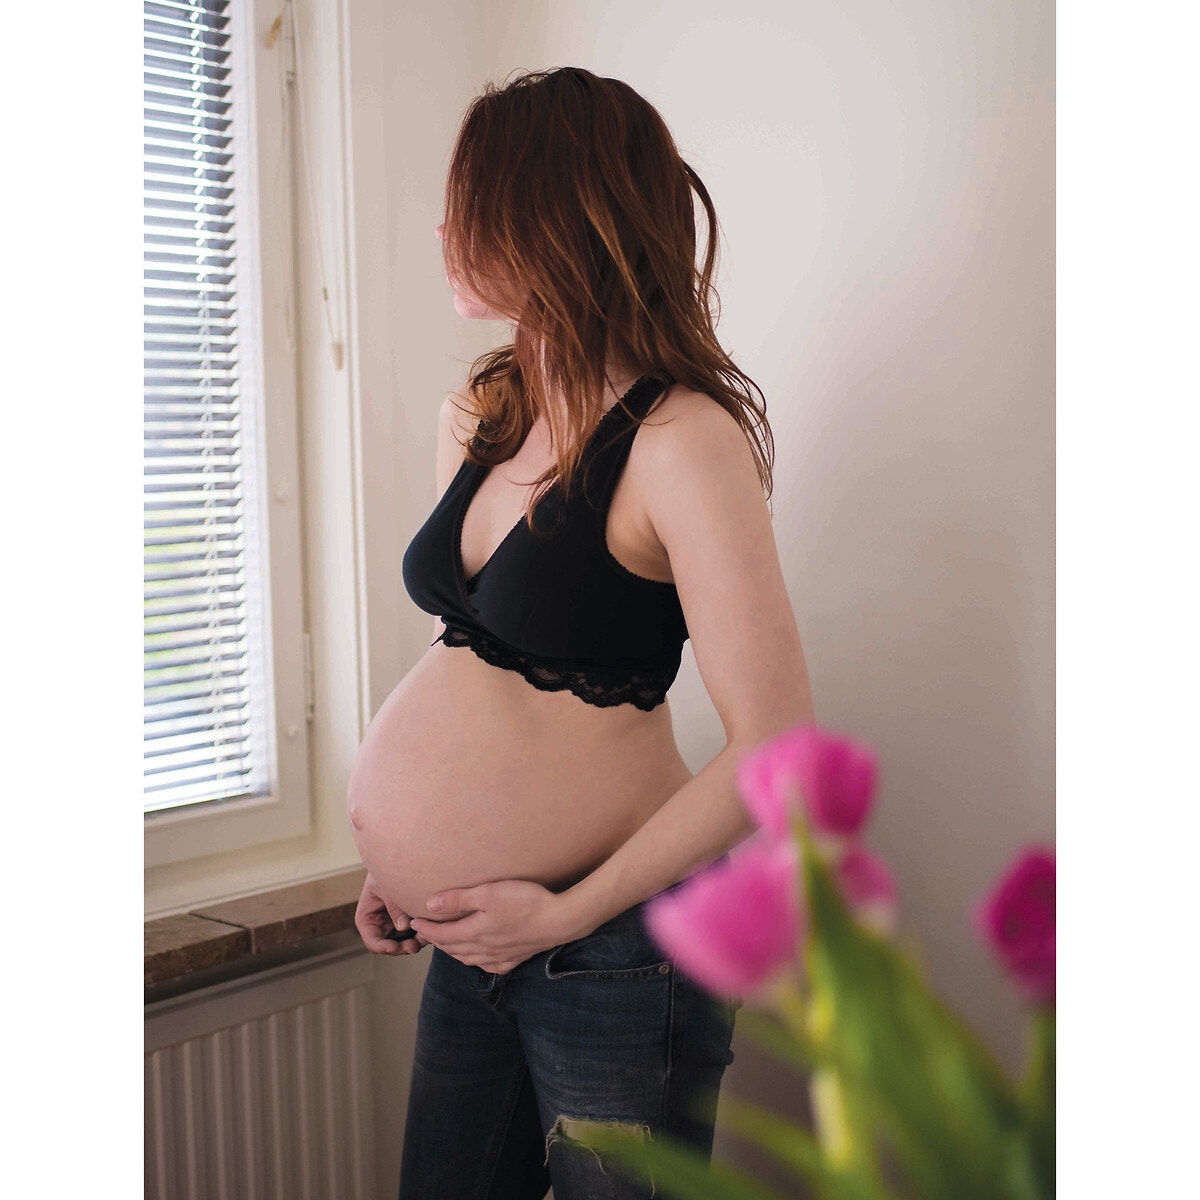 Μπουστάκι εγκυμοσύνης και θηλασμού